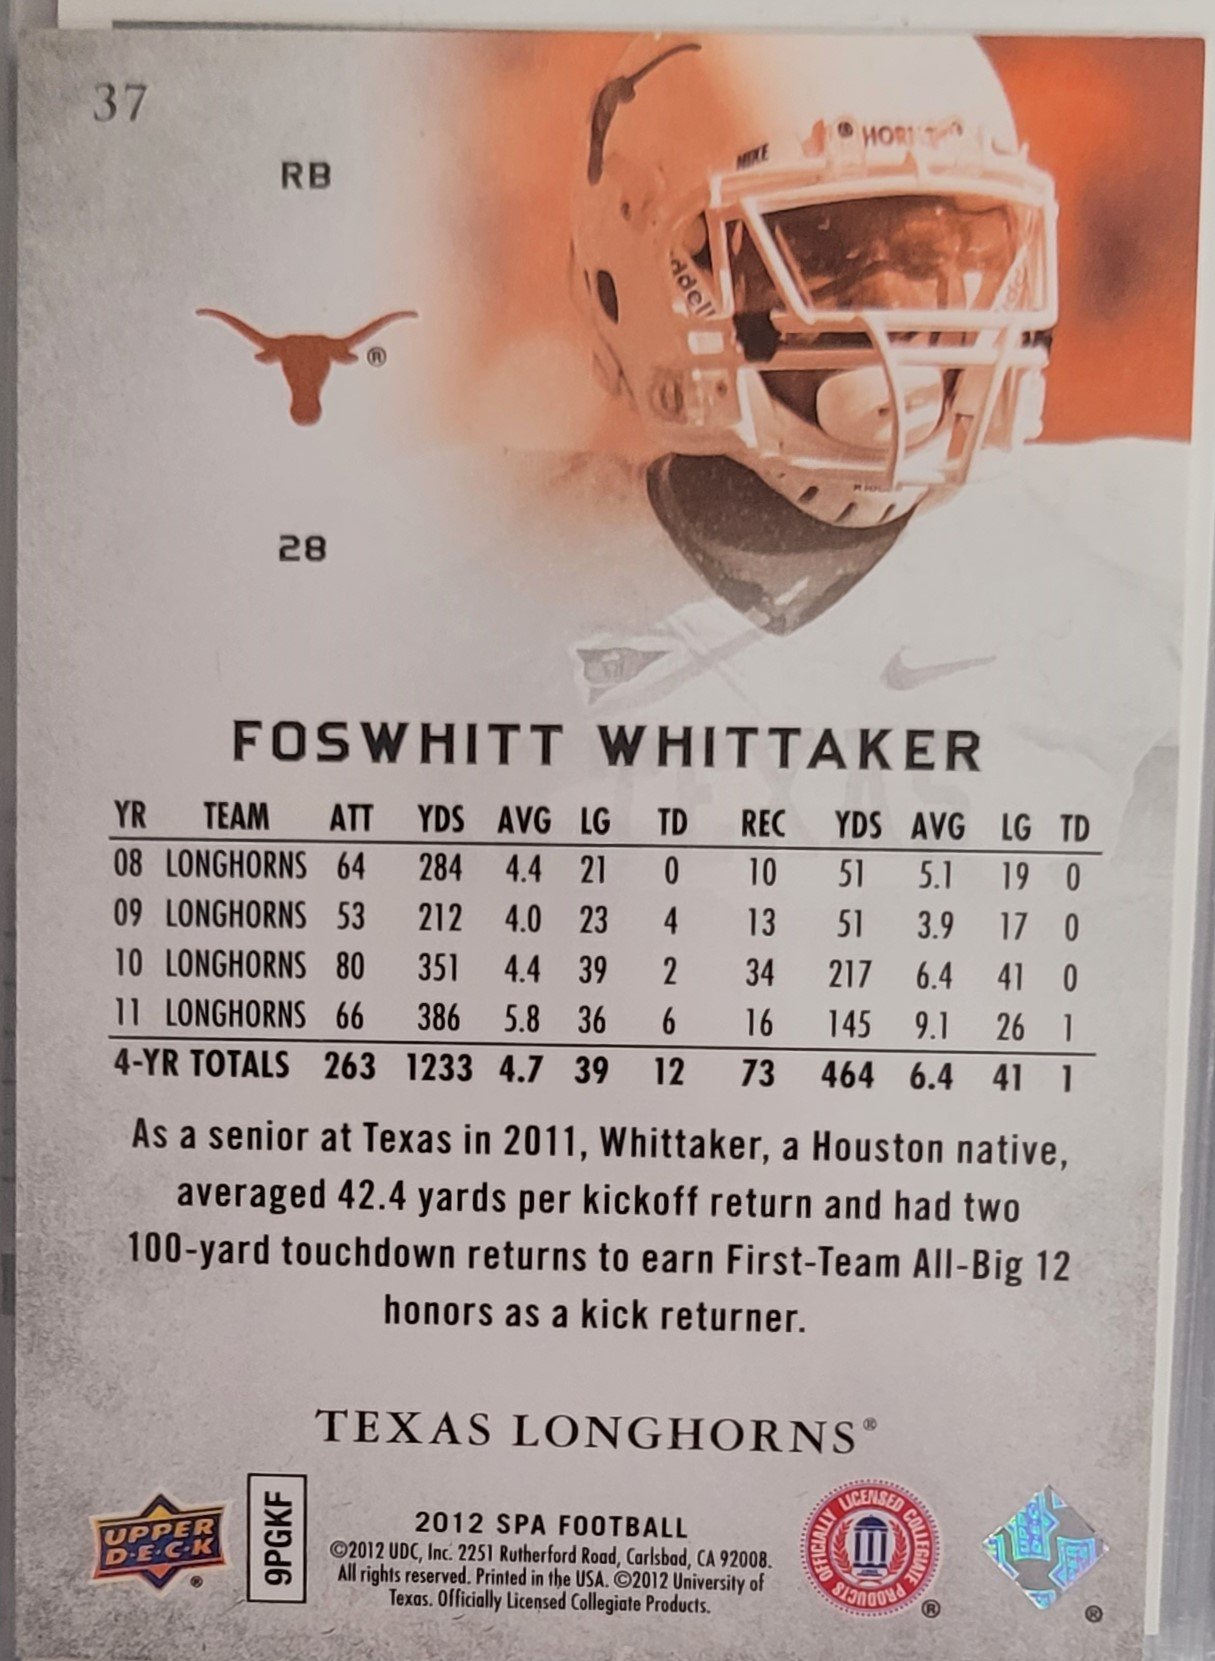 Foswhitt Whittaker